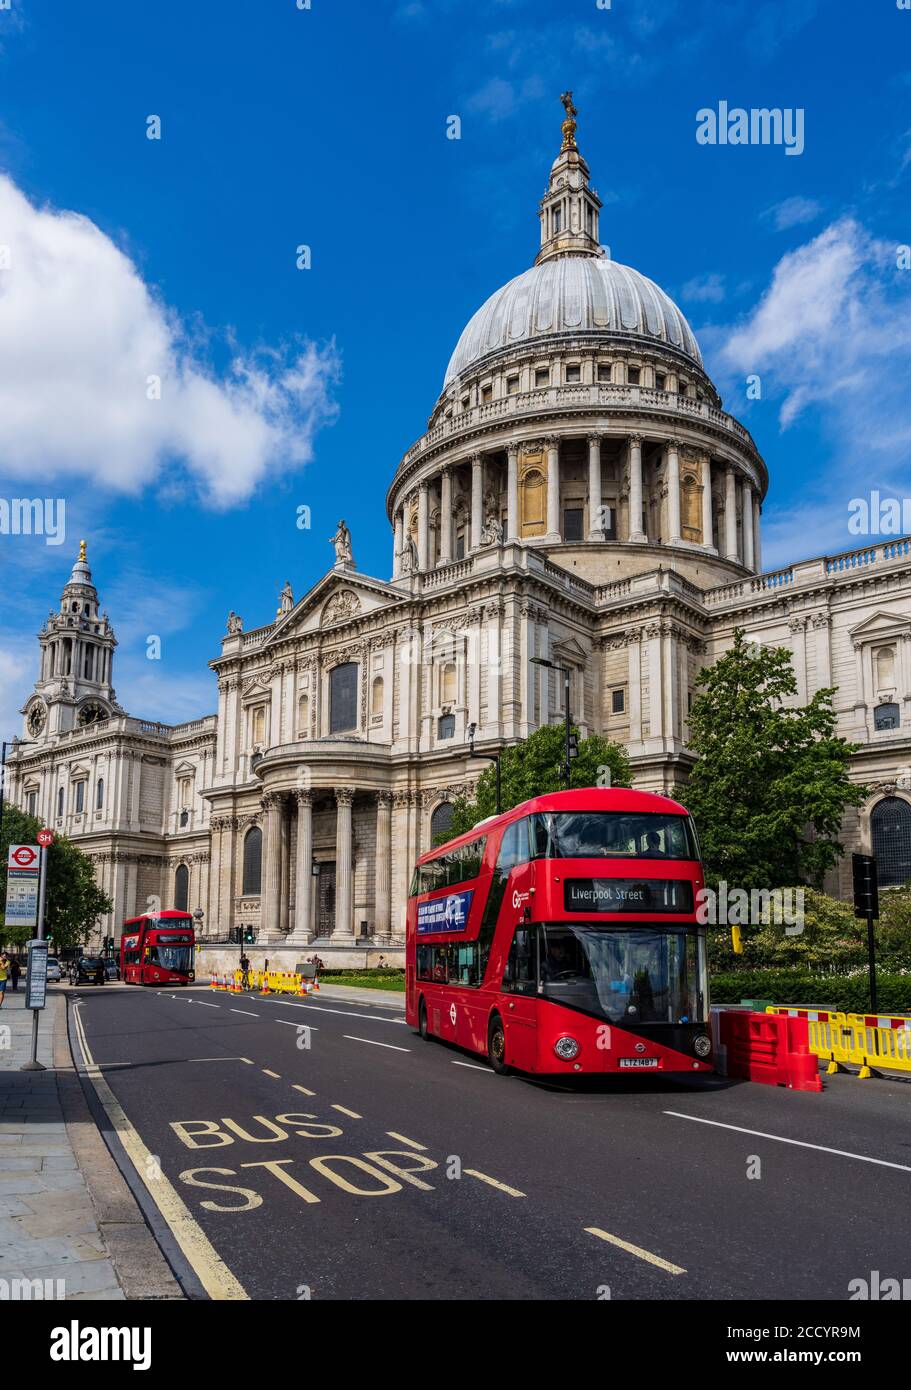 St Paul's Cathedral London - ein Londoner Bus fährt an der berühmten St Pauls Cathedral London UK - Architekt Christopher Wren begann 1675 geweiht 1697. Stockfoto